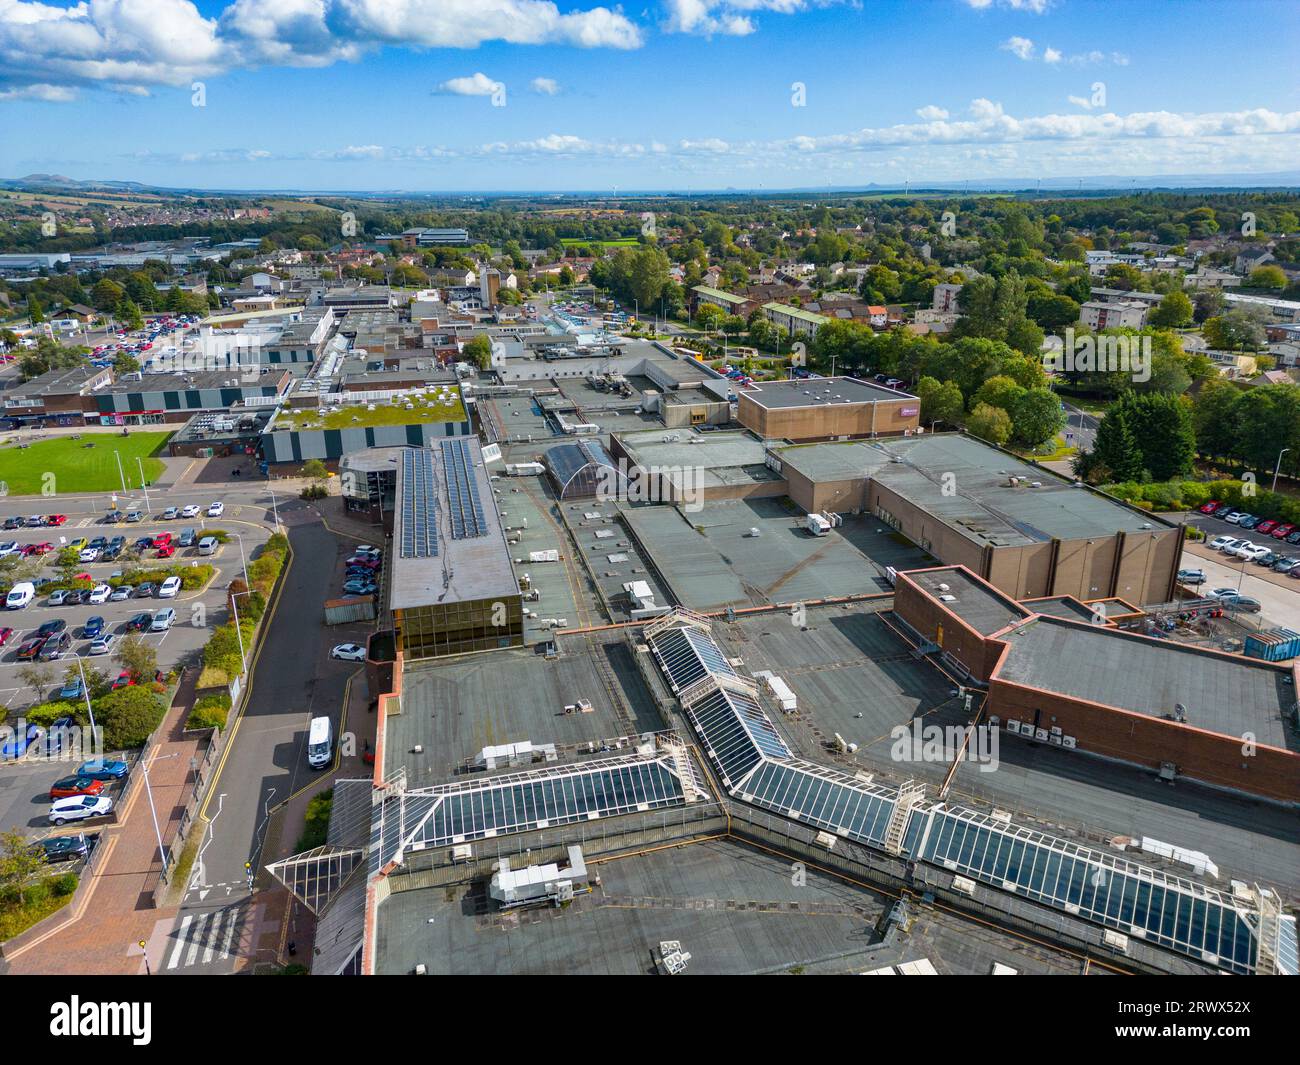 Veduta aerea del centro commerciale Kingdom nel parco al dettaglio nel centro citta' di Glenrothes New Town , Fife, Scozia, Regno Unito Foto Stock